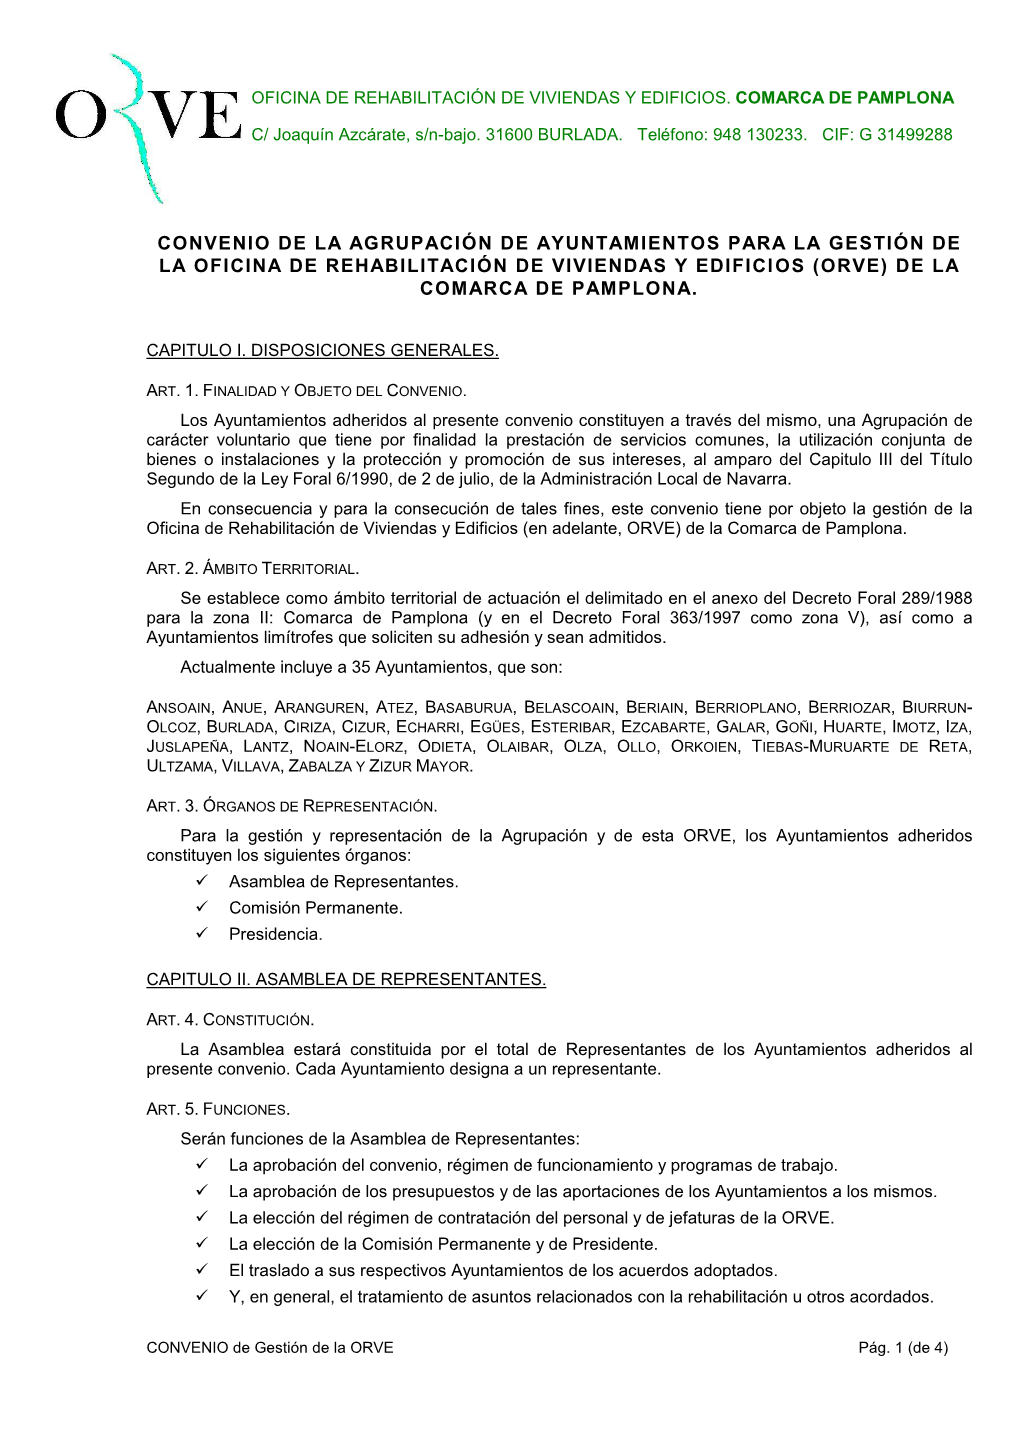 Convenio De La Agrupación De Ayuntamientos Para La Gestión De La Oficina De Rehabilitación De Viviendas Y Edificios (Orve) De La Comarca De Pamplona